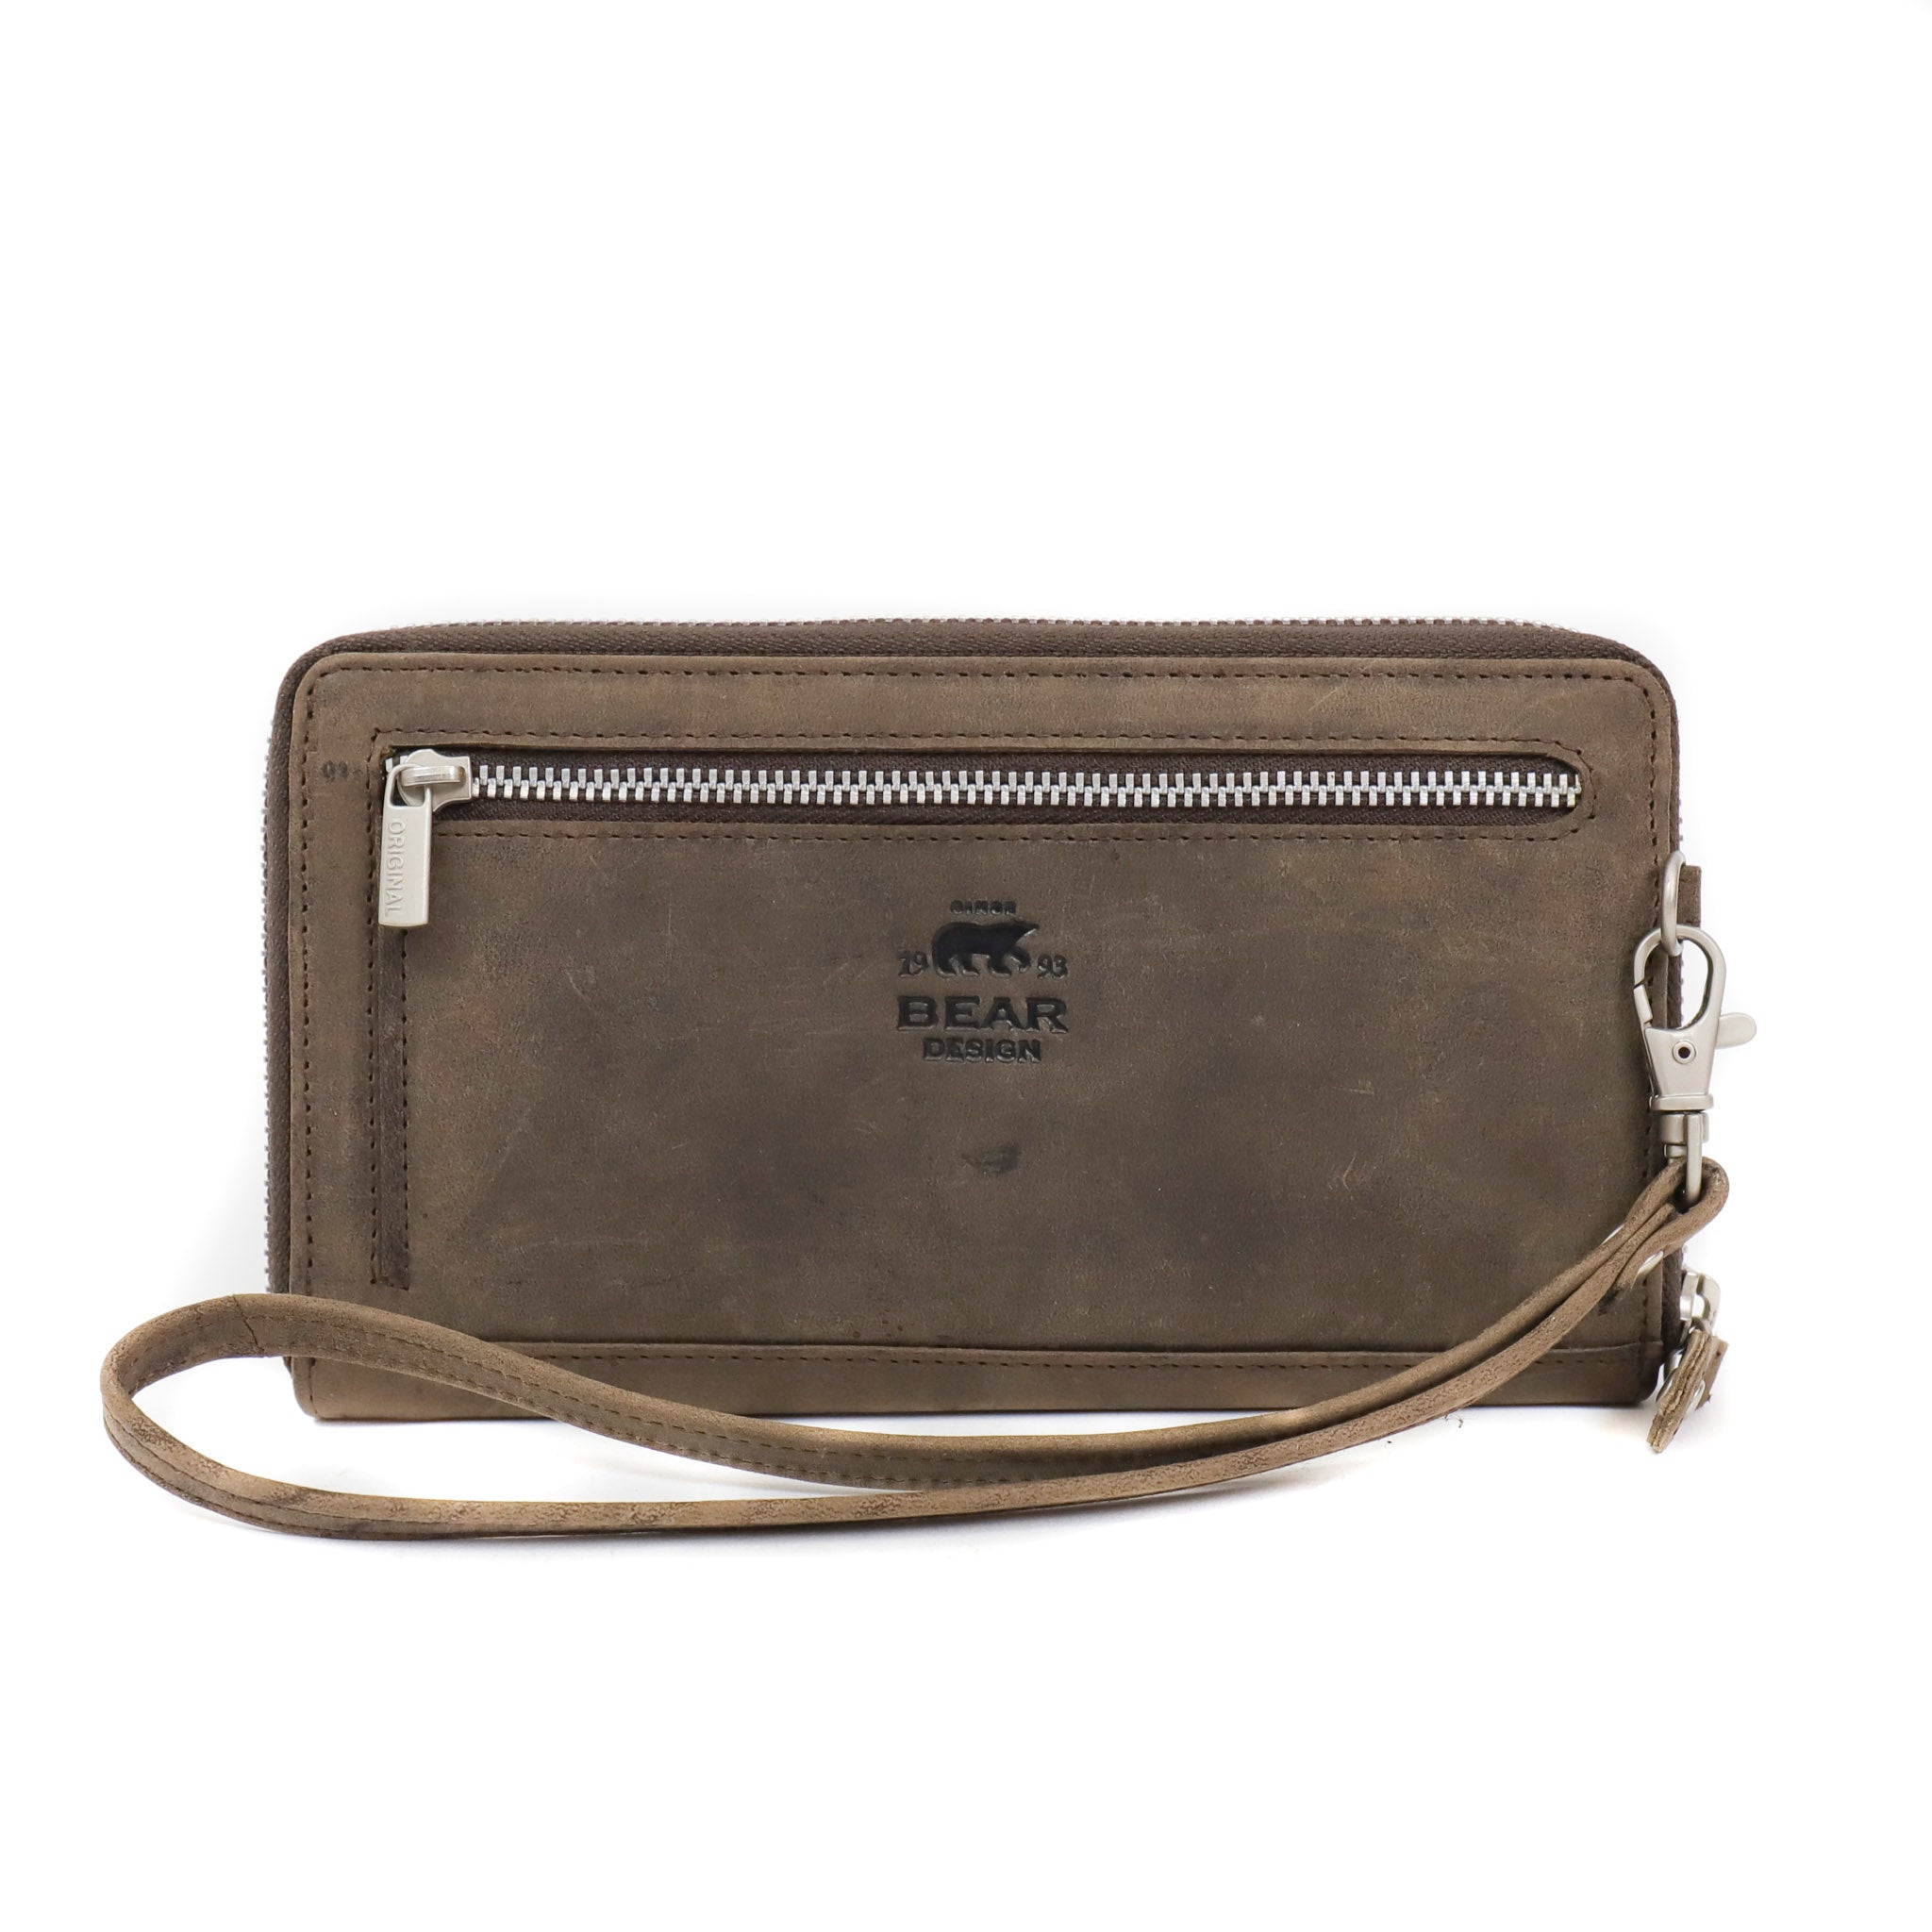 Zipper wallet 'Matilda' brown - HD 9165